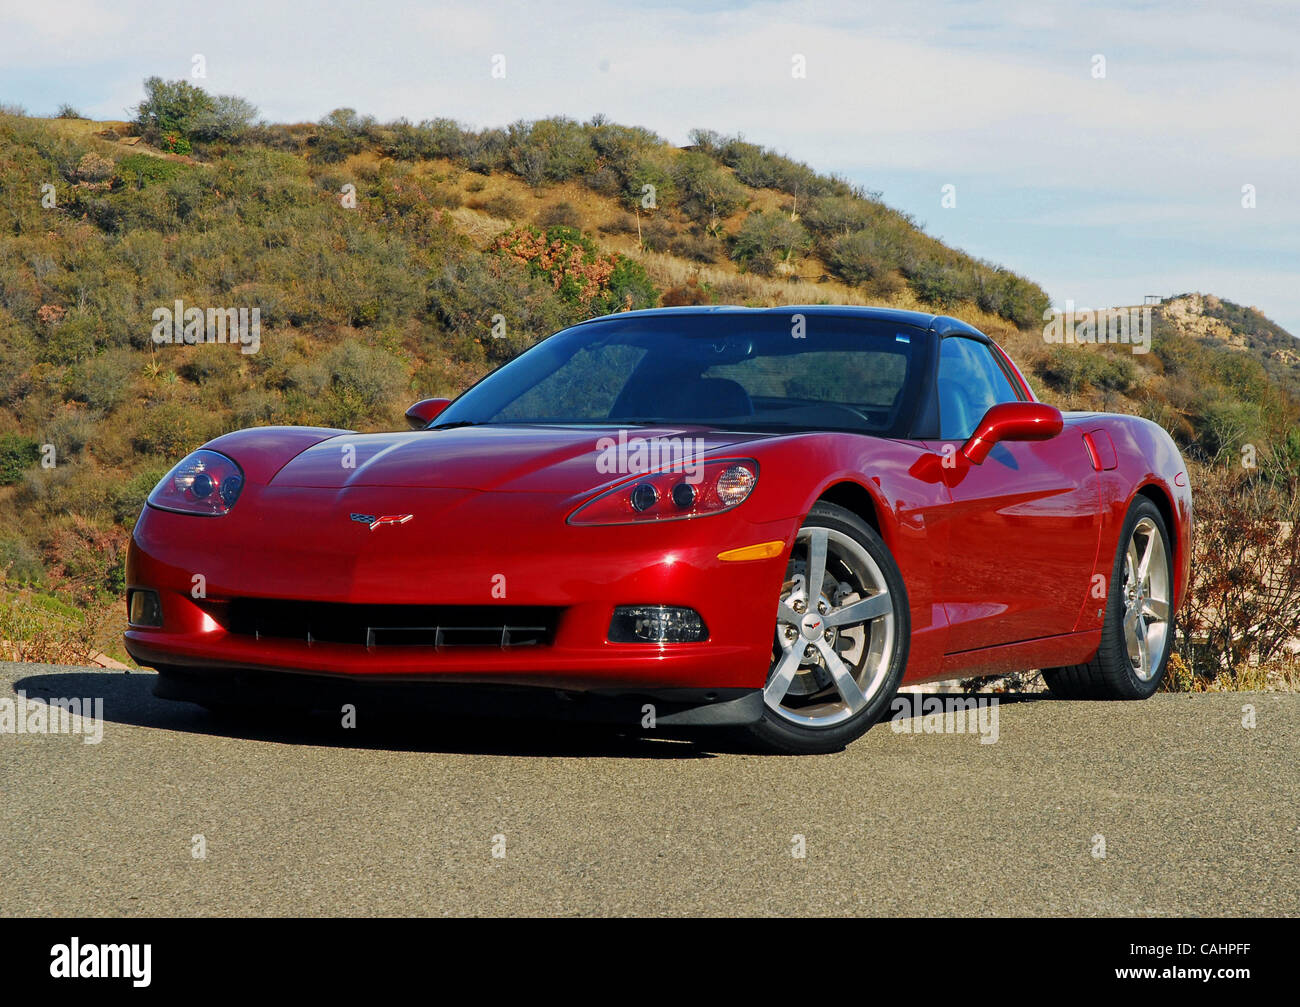 12. Dezember 2007 - Los Angeles, Kalifornien, USA - es gibt viele Verbesserungen und Verfeinerungen in diesem neuesten C6 Corvette, so dass es eine wahre Supersportwagen mit einer schnelleren 0-60 mph Zeit von nur 4,1 Sekunden und eine Höchstgeschwindigkeit von 190 km/h. Diese Tatsachen sind aufgrund der neuen LS3 6,2-Liter V8-Motor, die jetzt aus 430hp bei 5,9 pumpt Stockfoto